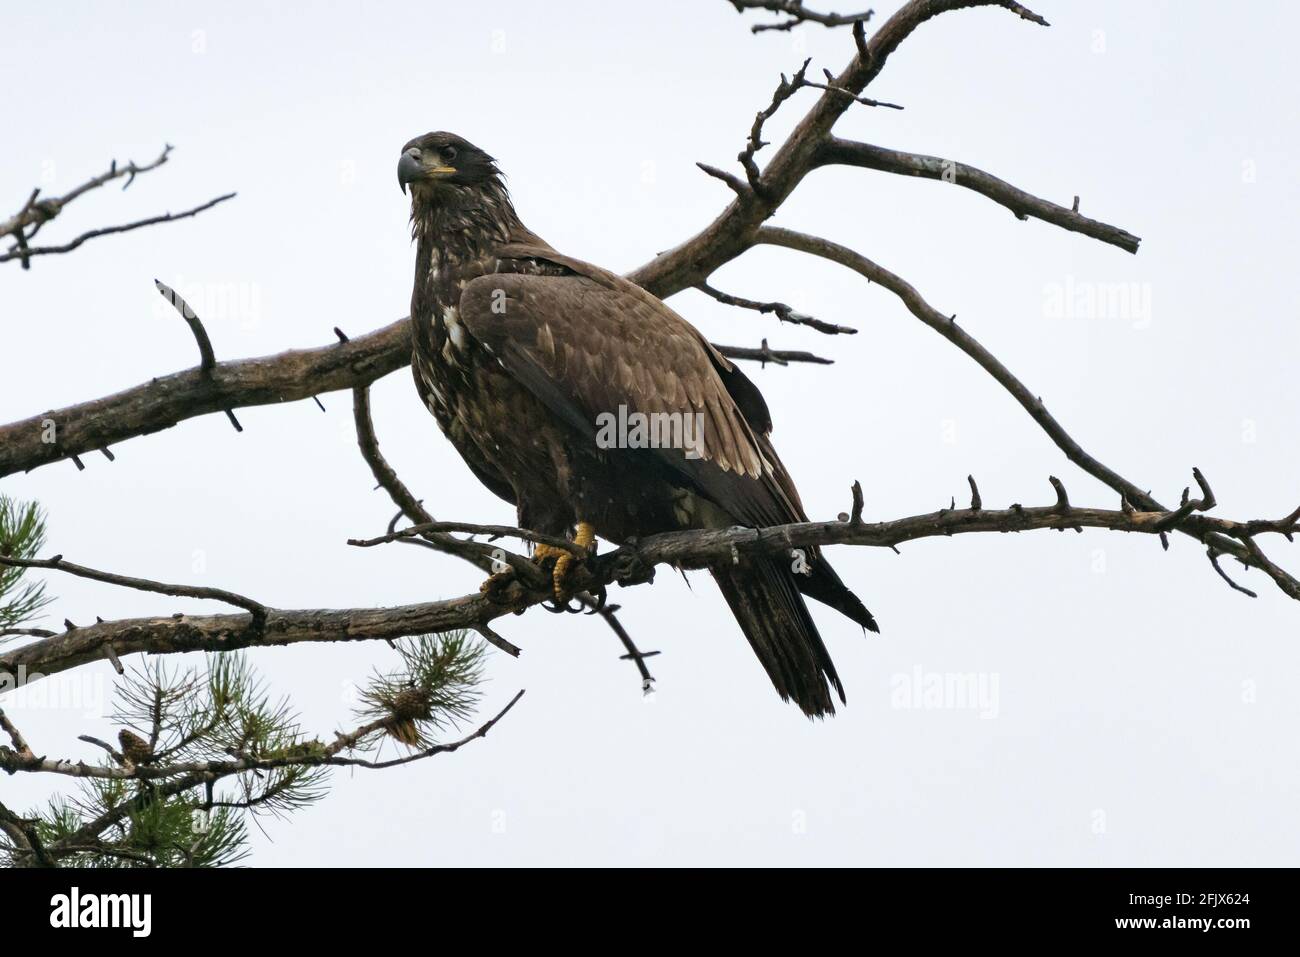 Goldener Adler sitzt an einem regnerischen Tag auf einem Baum. Greifvögel. Aquila chrysaetos. Tierwelt im Jasper National Park, Alberta, Kanada. Vögel von Nord Amer Stockfoto